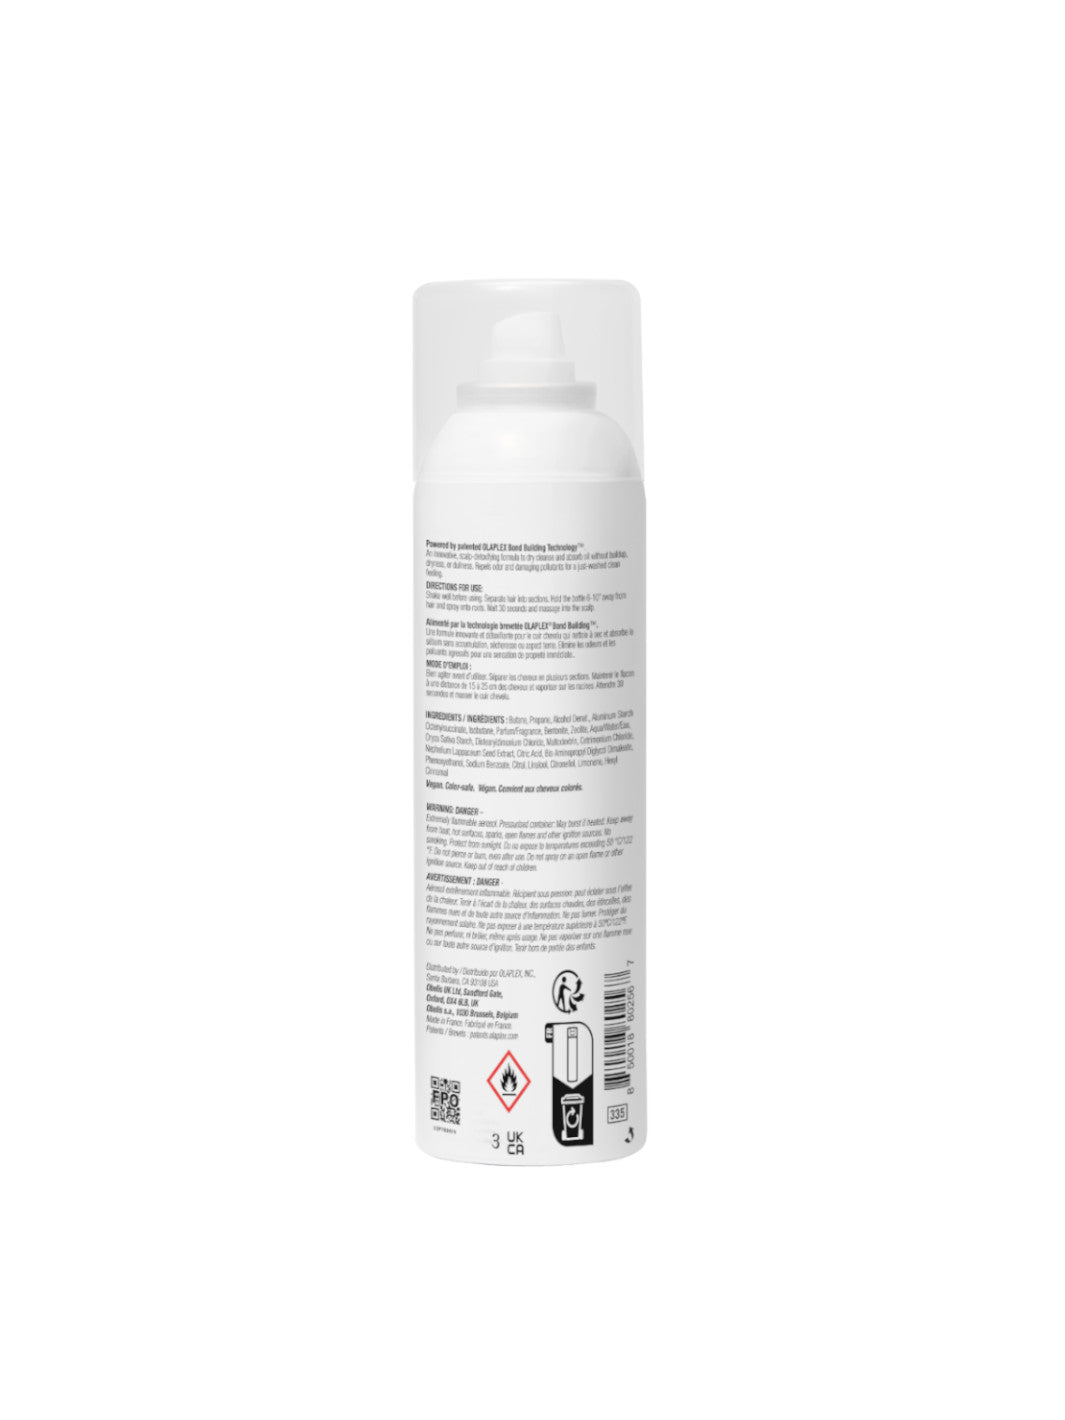 N°4D Clean Volume Detox Dry Shampoo Secco 250 ml